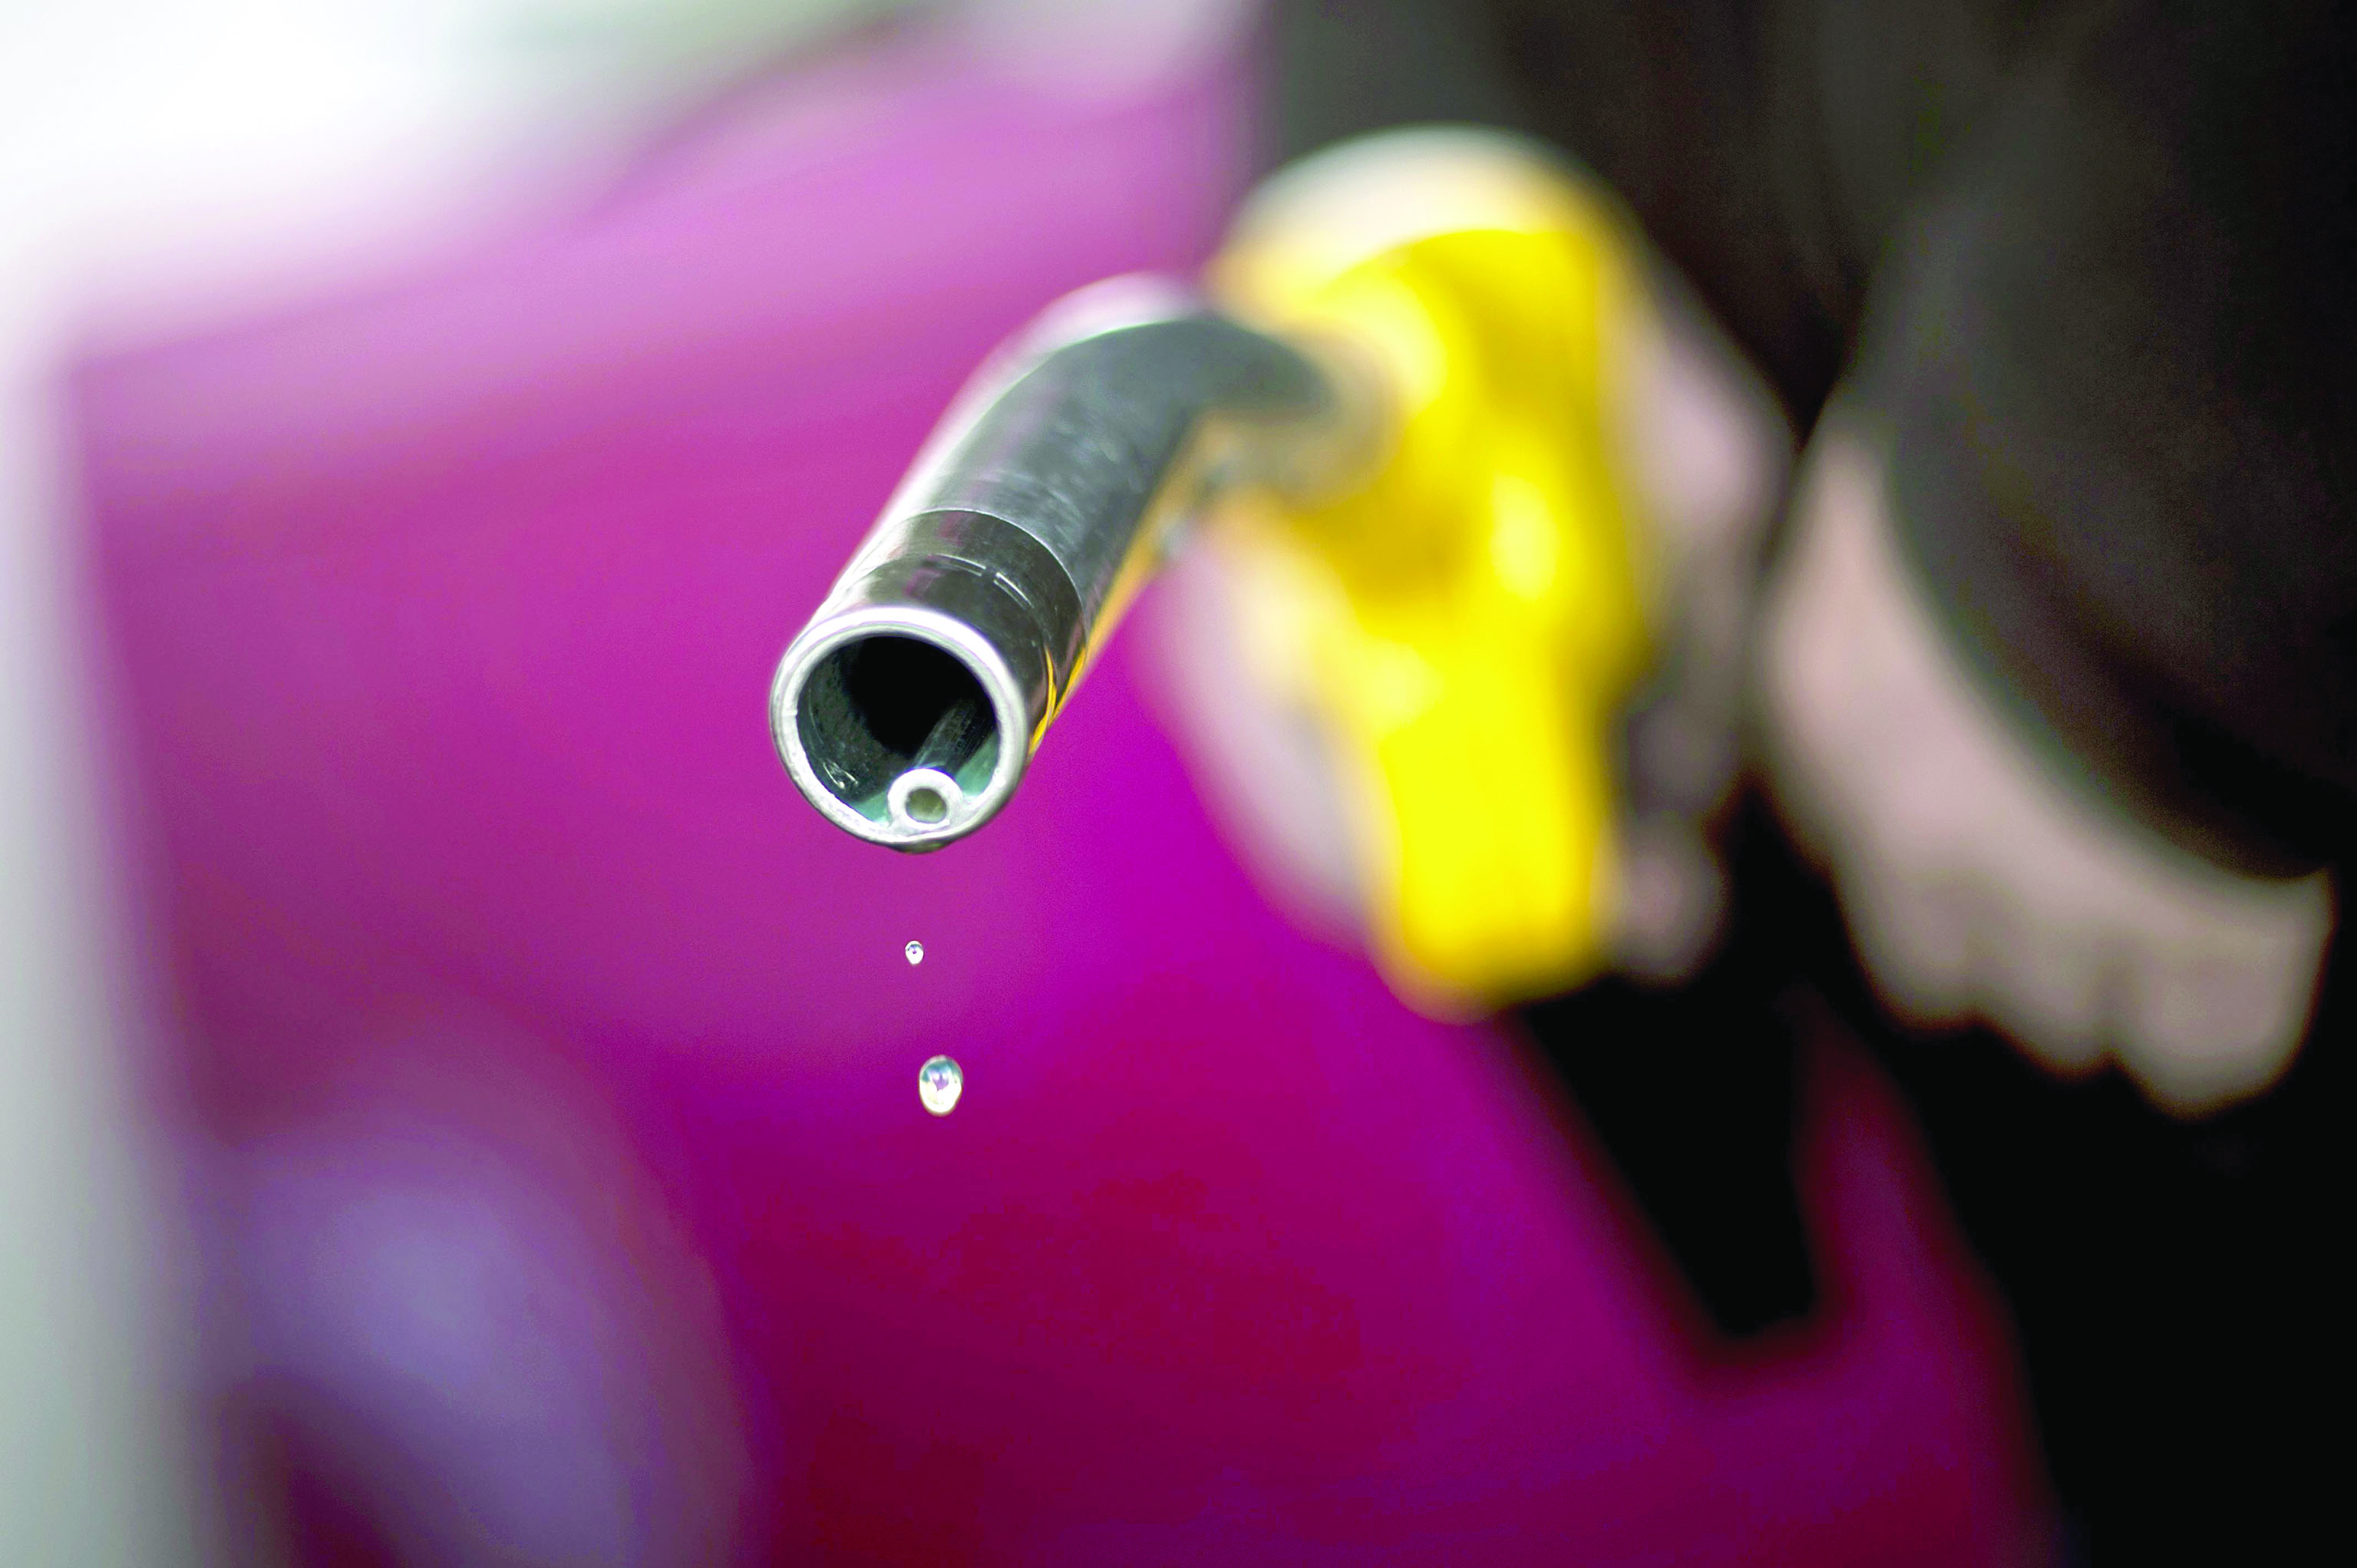 ارتفاع تسعيرة الوقود يزيد الطلب على "العادي"